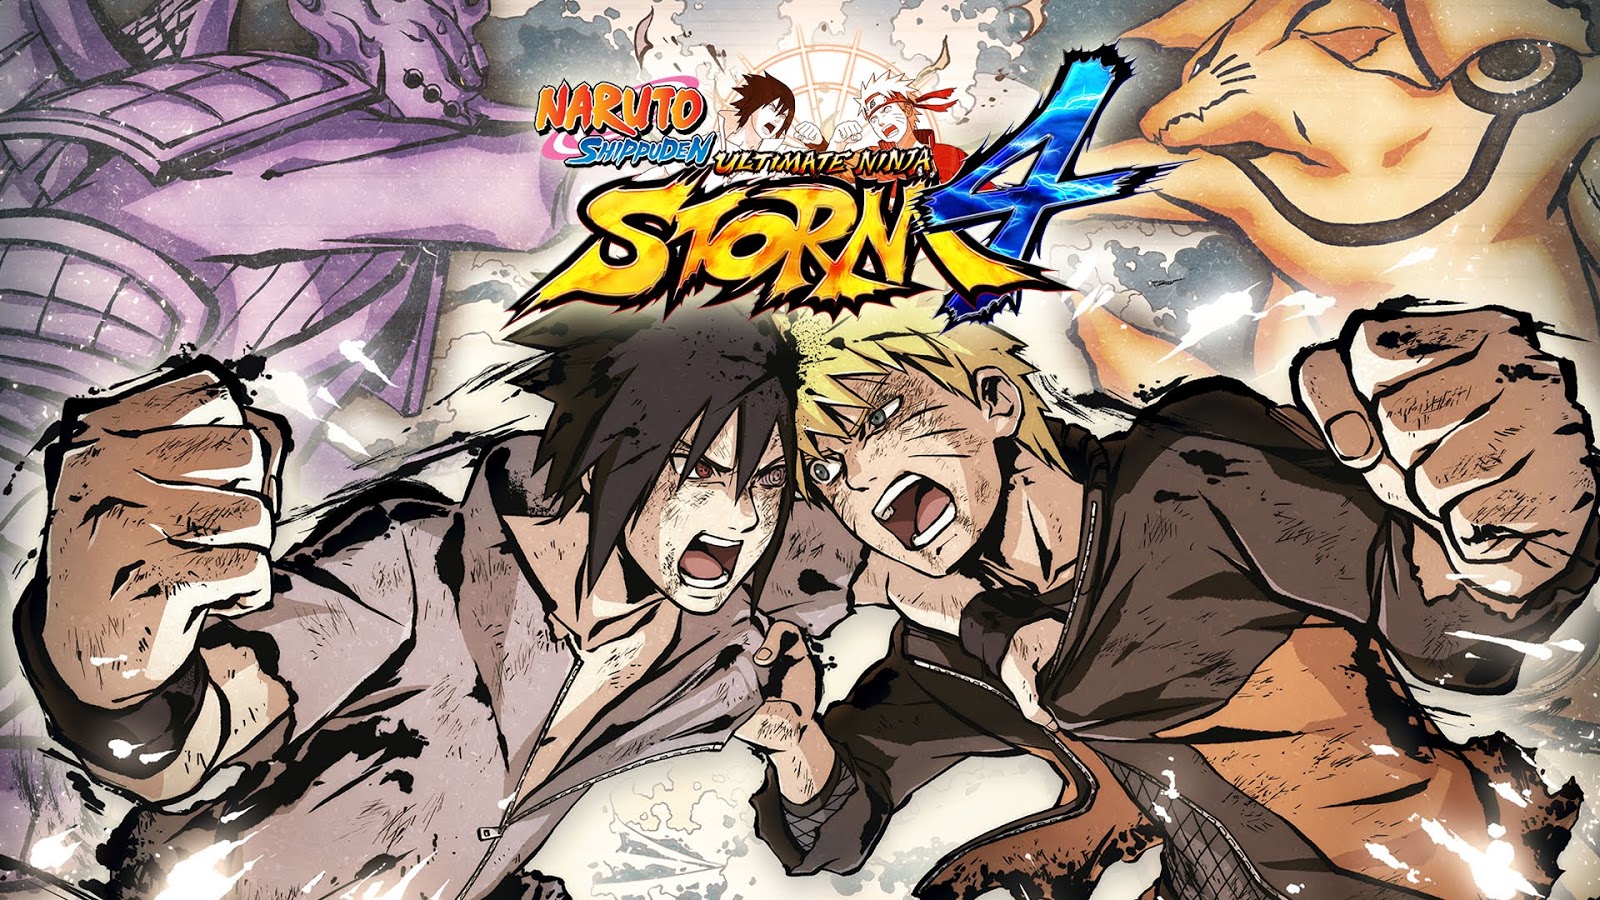 Naruto Ultimate Ninja Storm Revolution: testamos o novo game do famoso anime